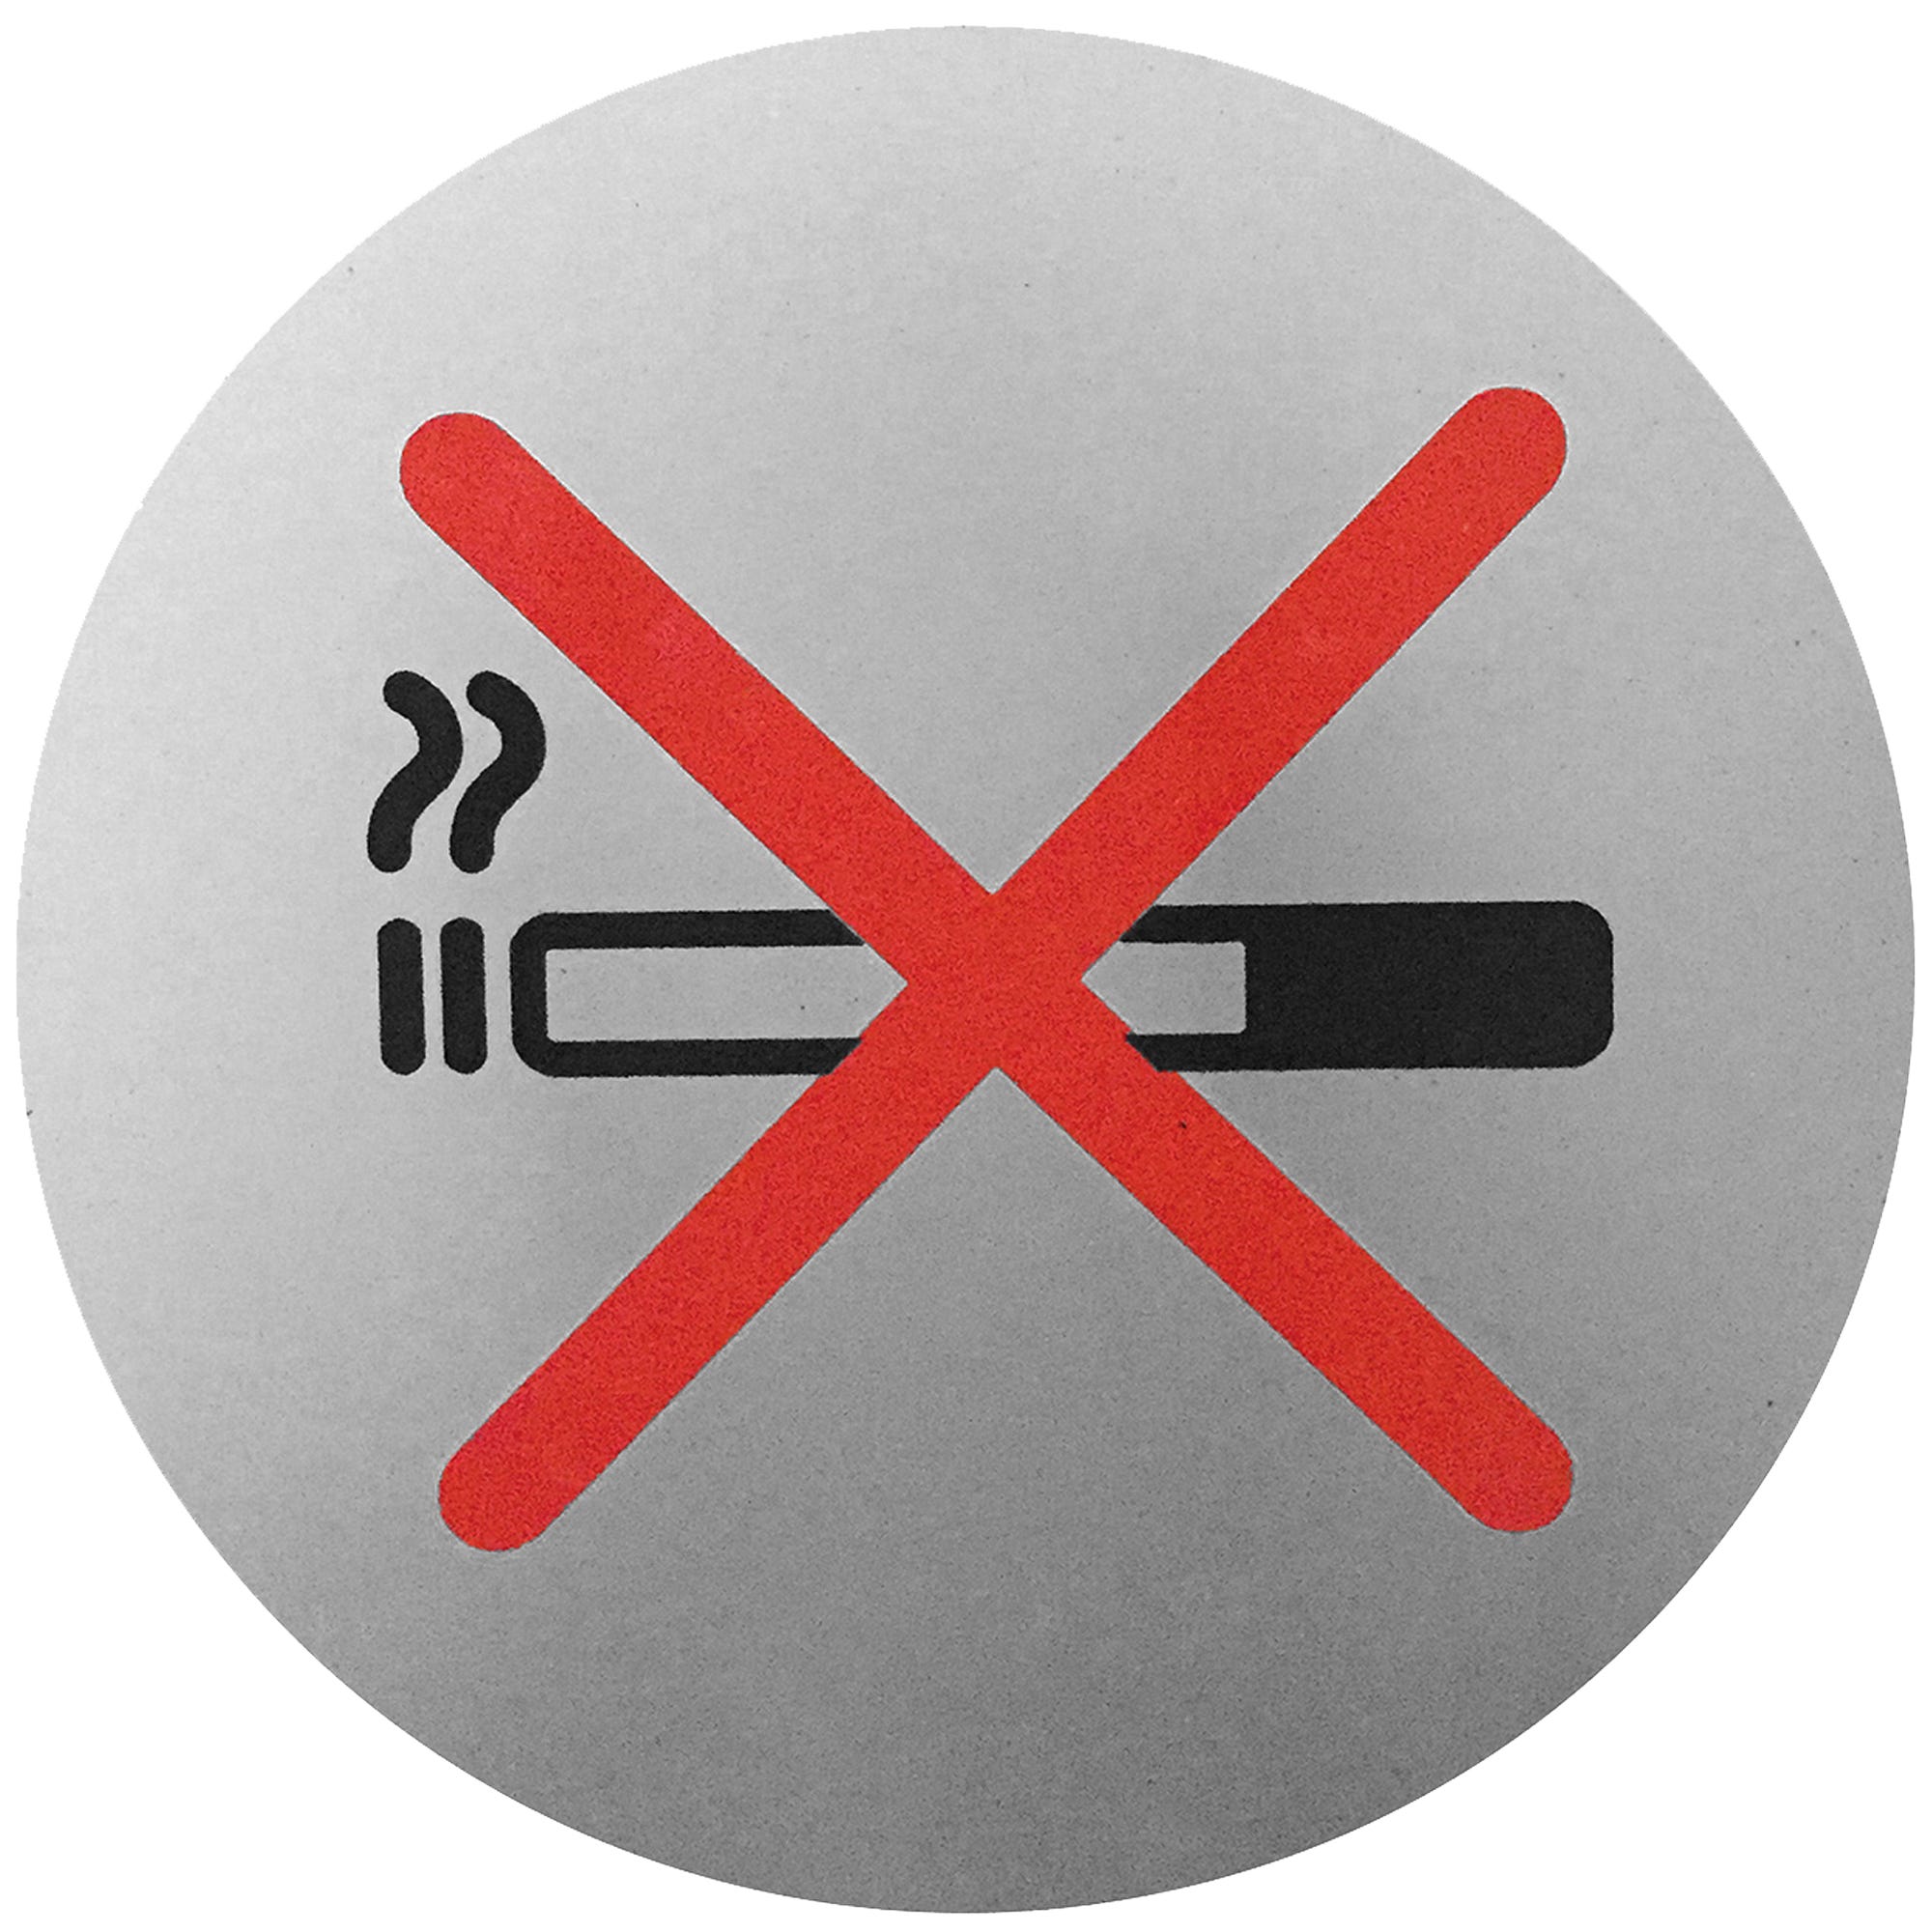 Plancha de señalización Prohibido Fumar 9 Cm